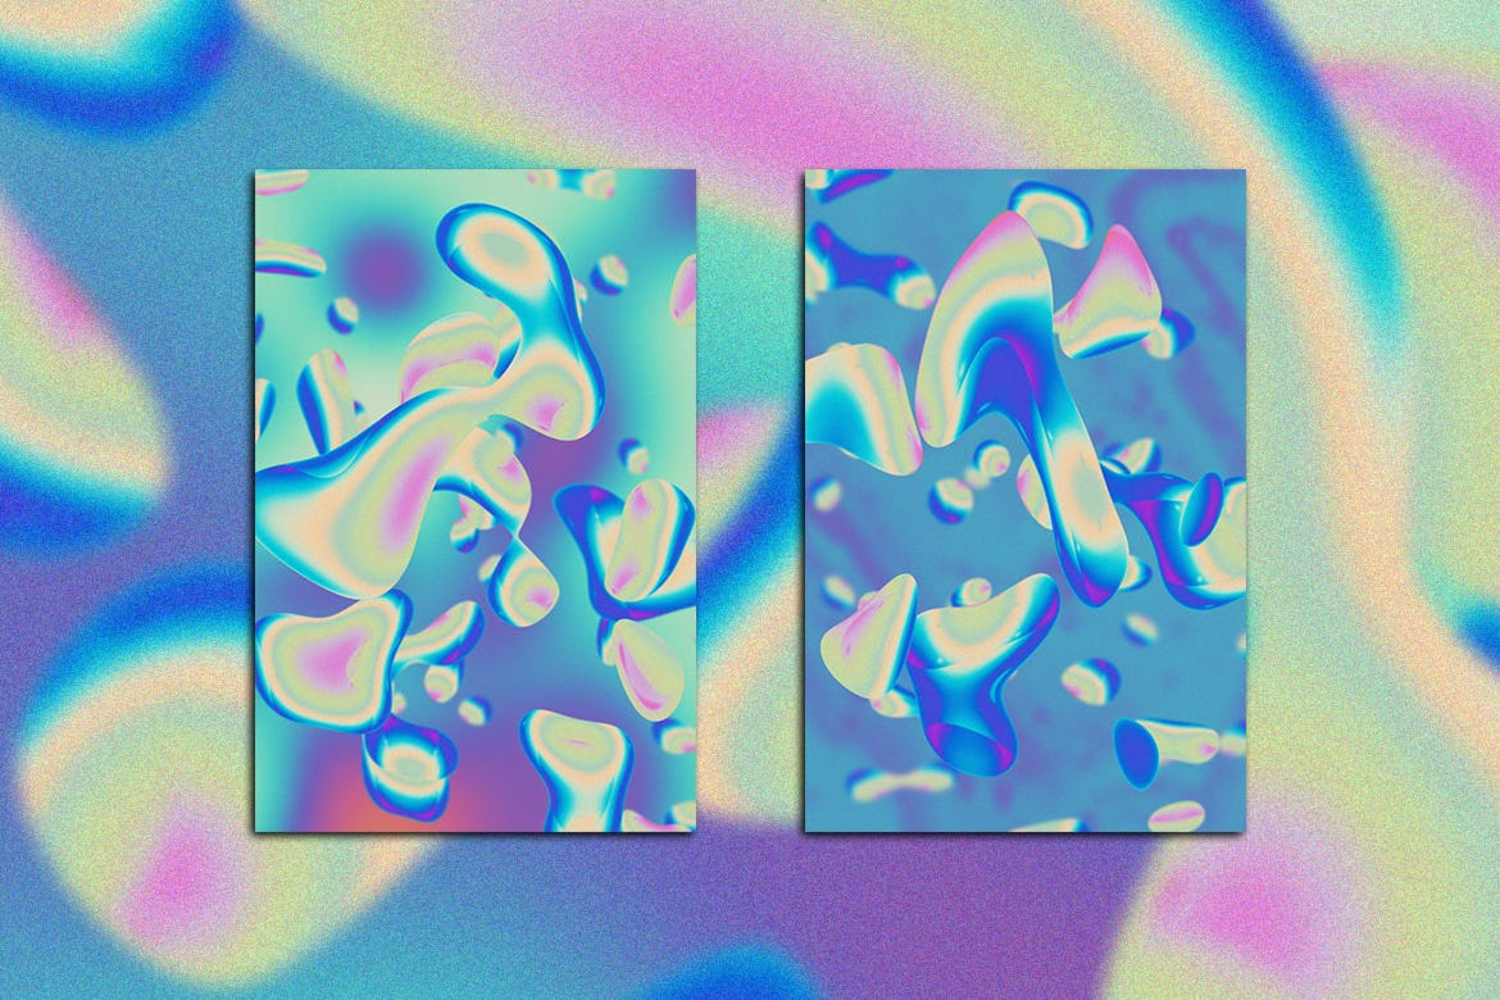 3702 5款高清全息液体水滴微生物背景素材  Holographic Fluids Vol. 02